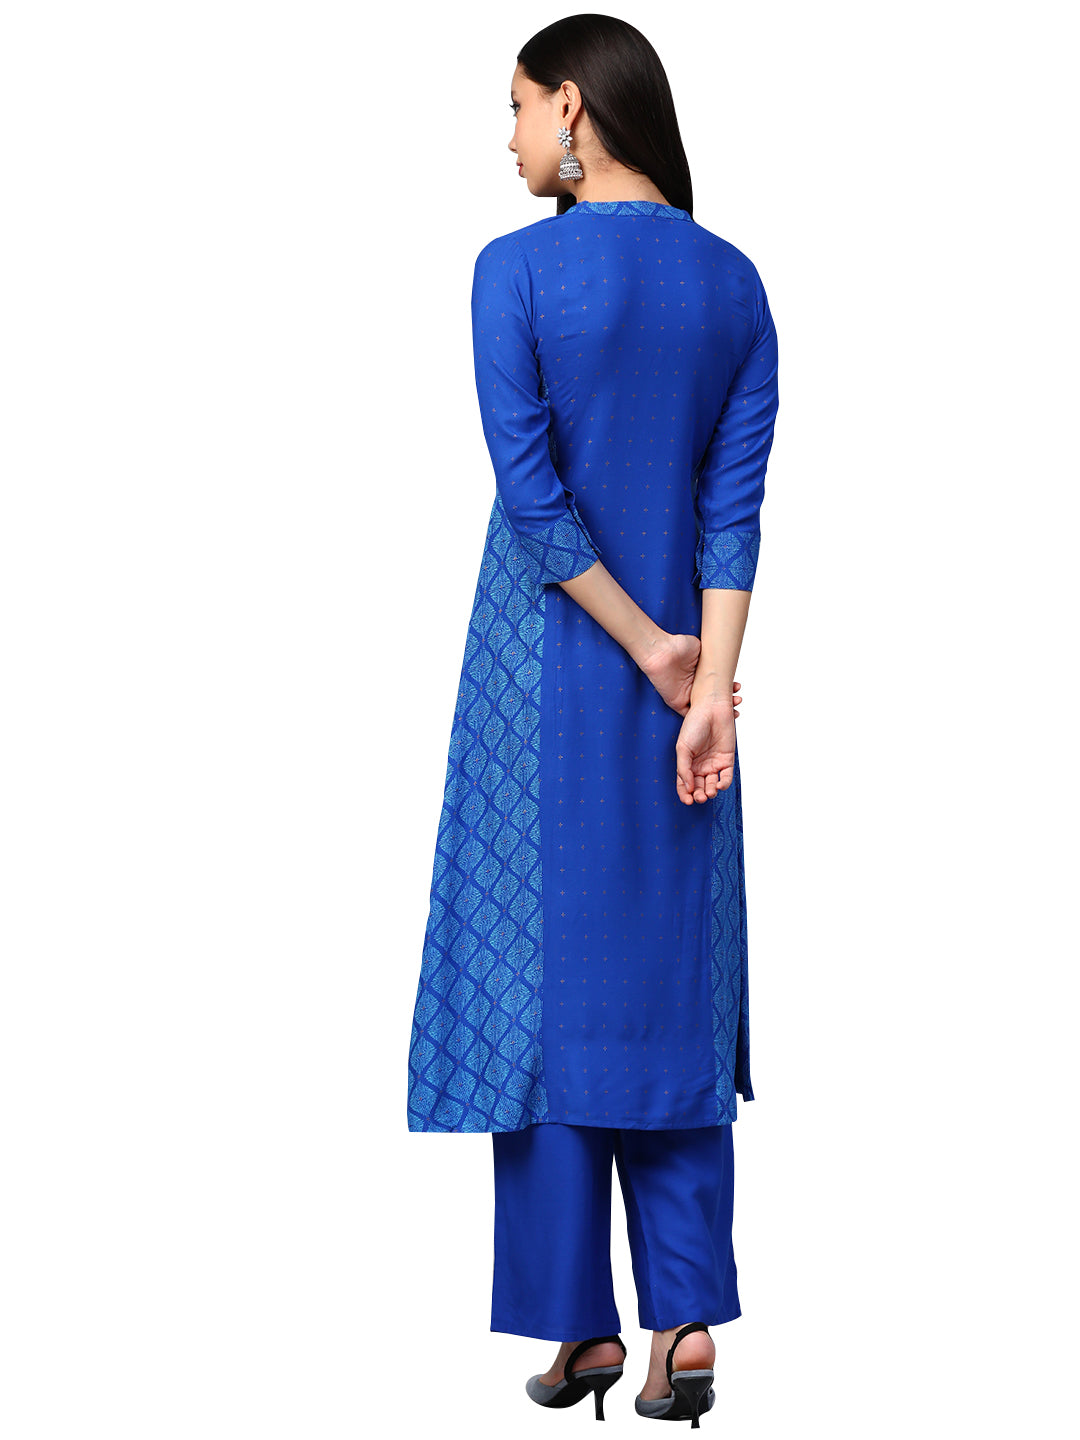 Women's Royal Blue Rayon Kurta - Ziyaa